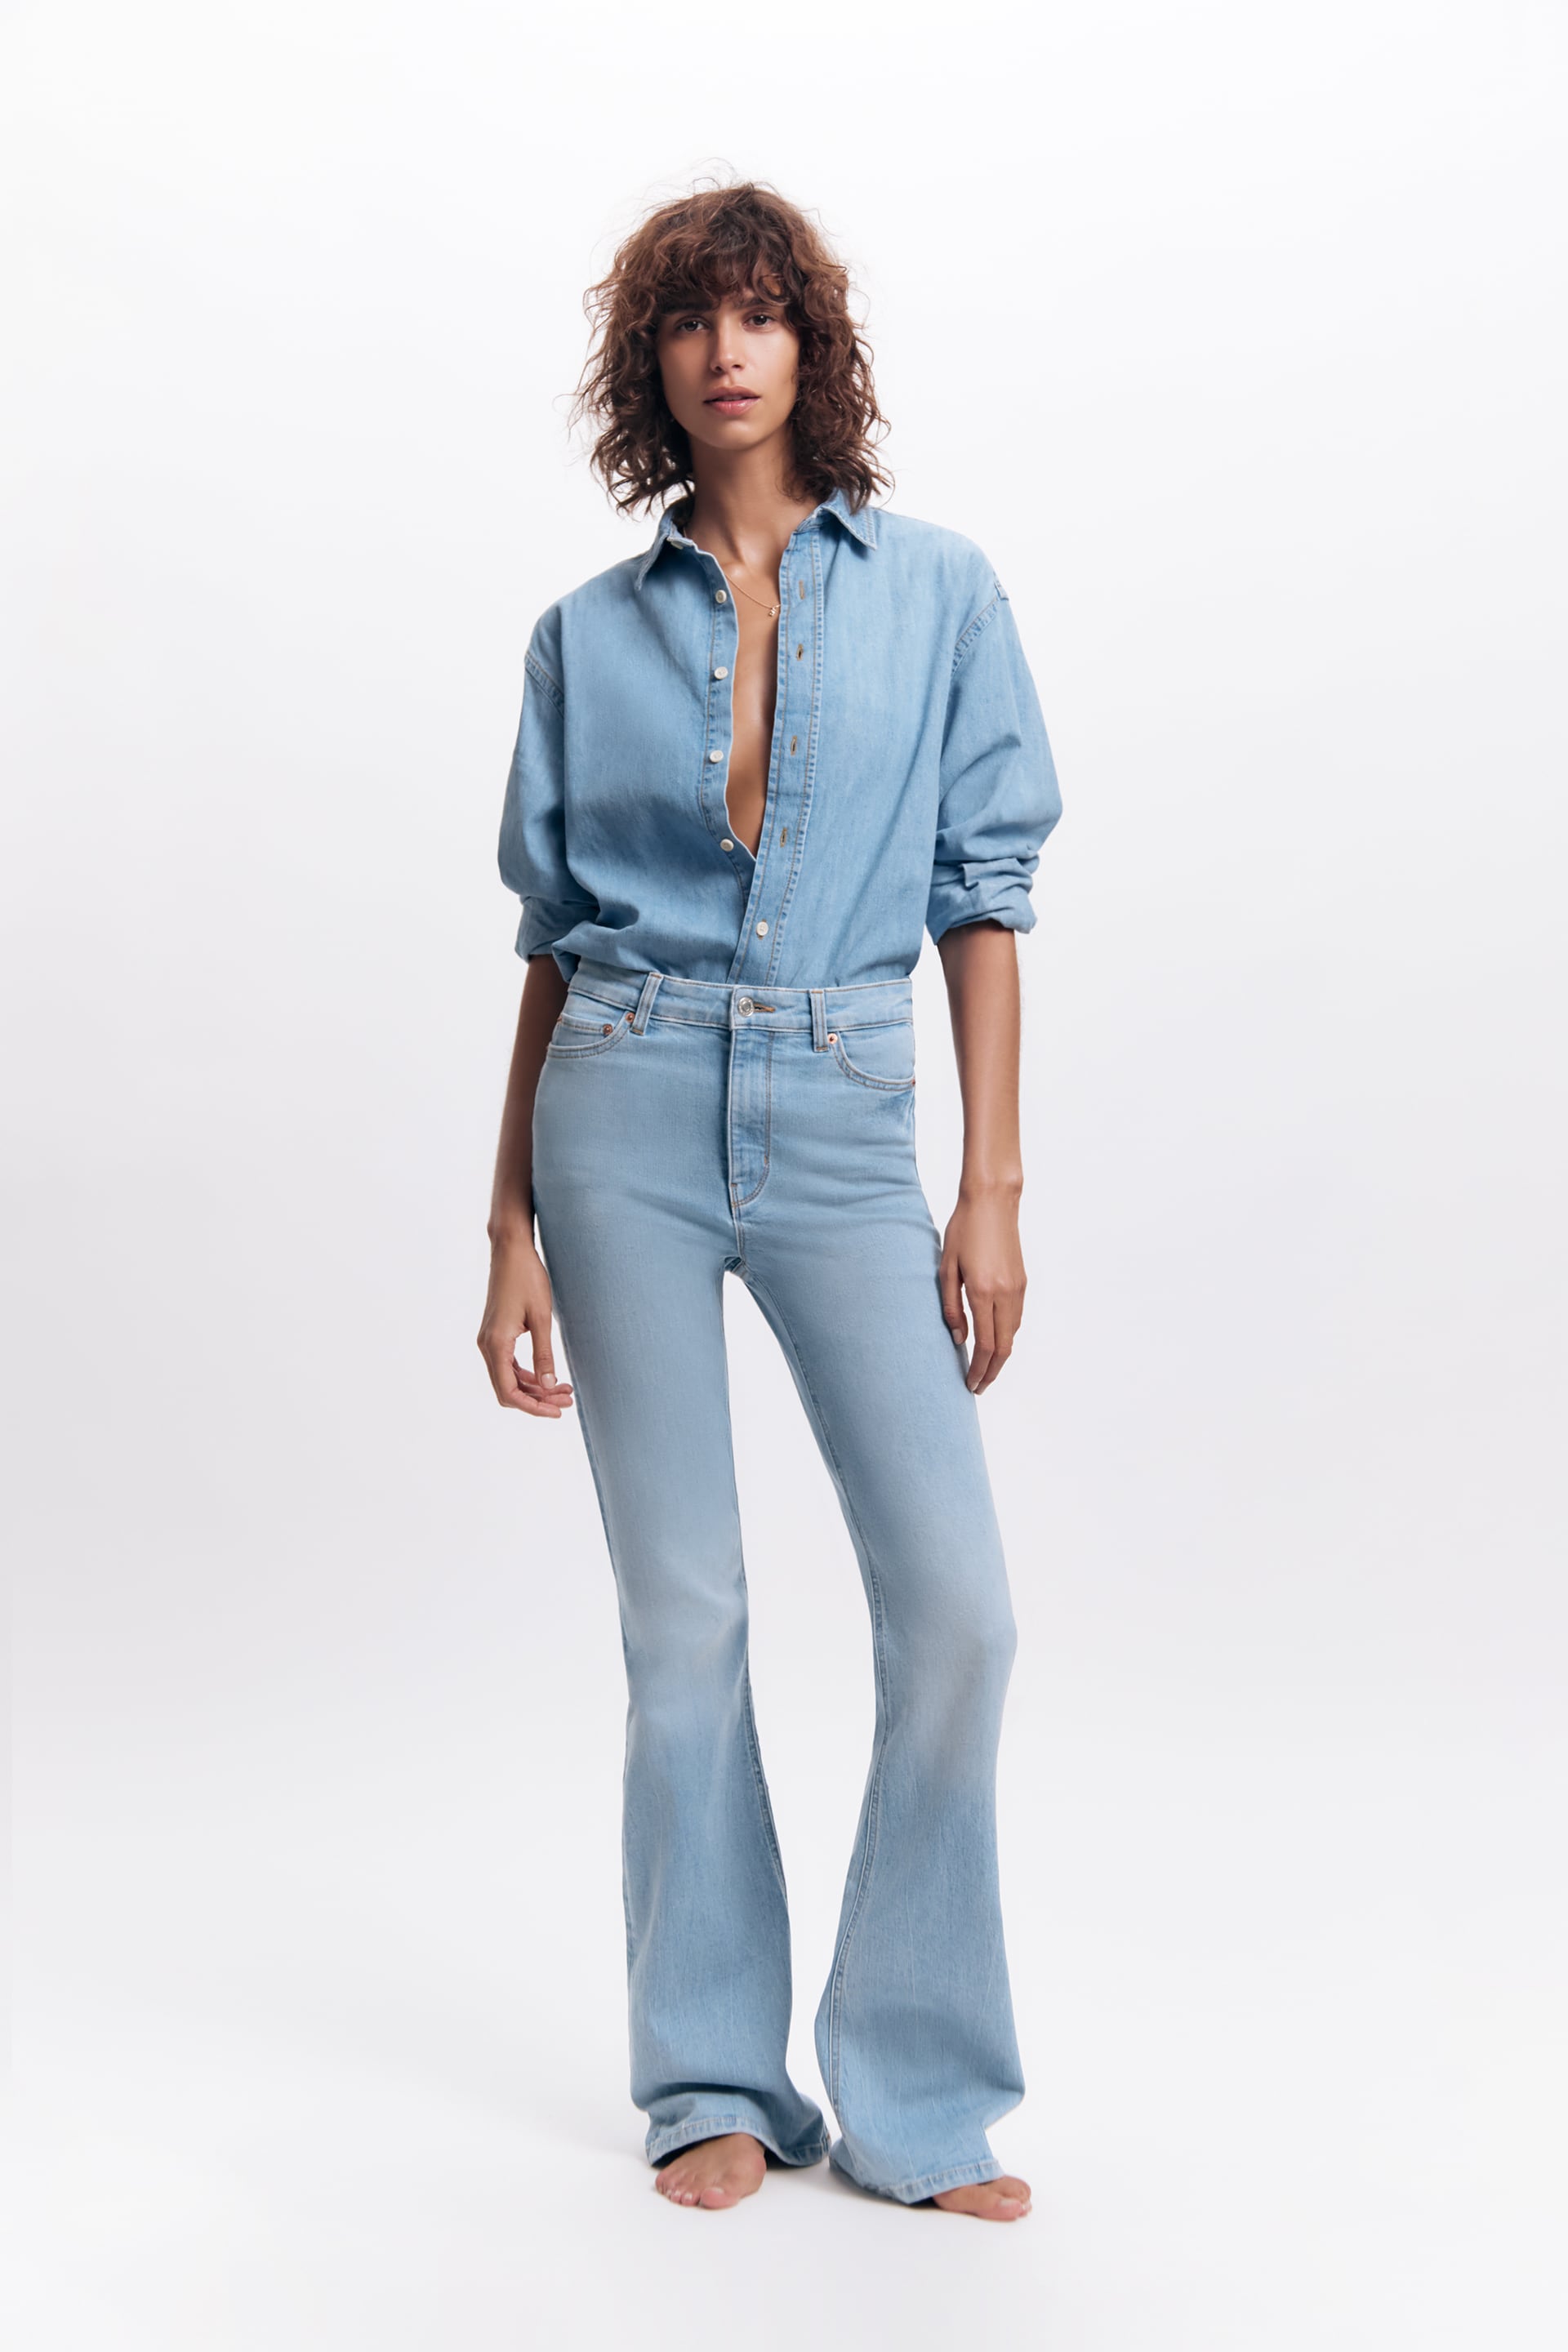 Zara Flare Jeans Cheap Buy, Save 50% | jlcatj.gob.mx